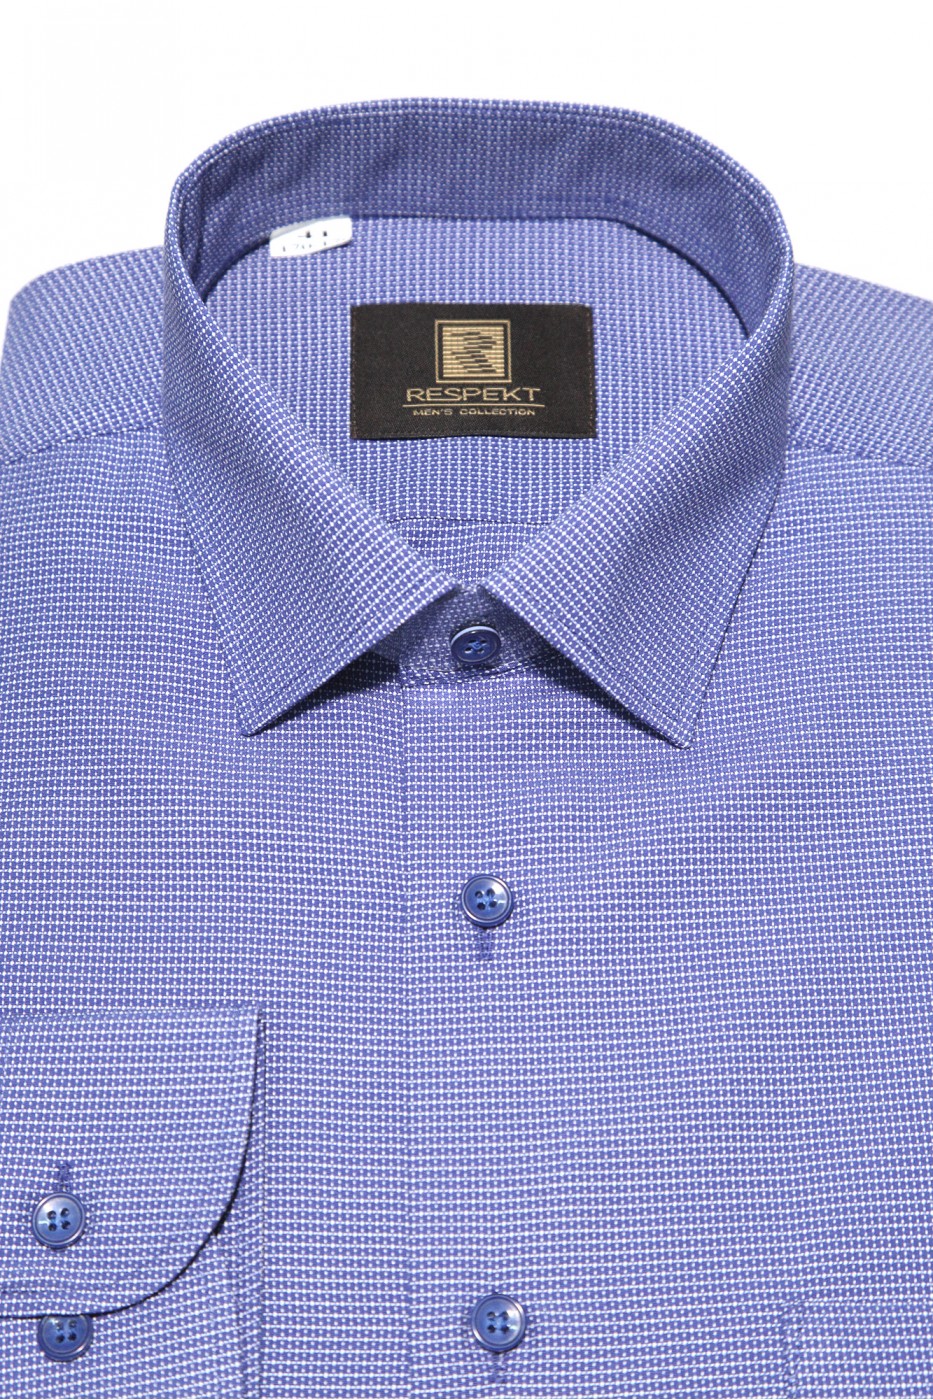 Синяя мужская рубашка в мелкую фактуру с синими пуговицами  ДР 365 (53-08)